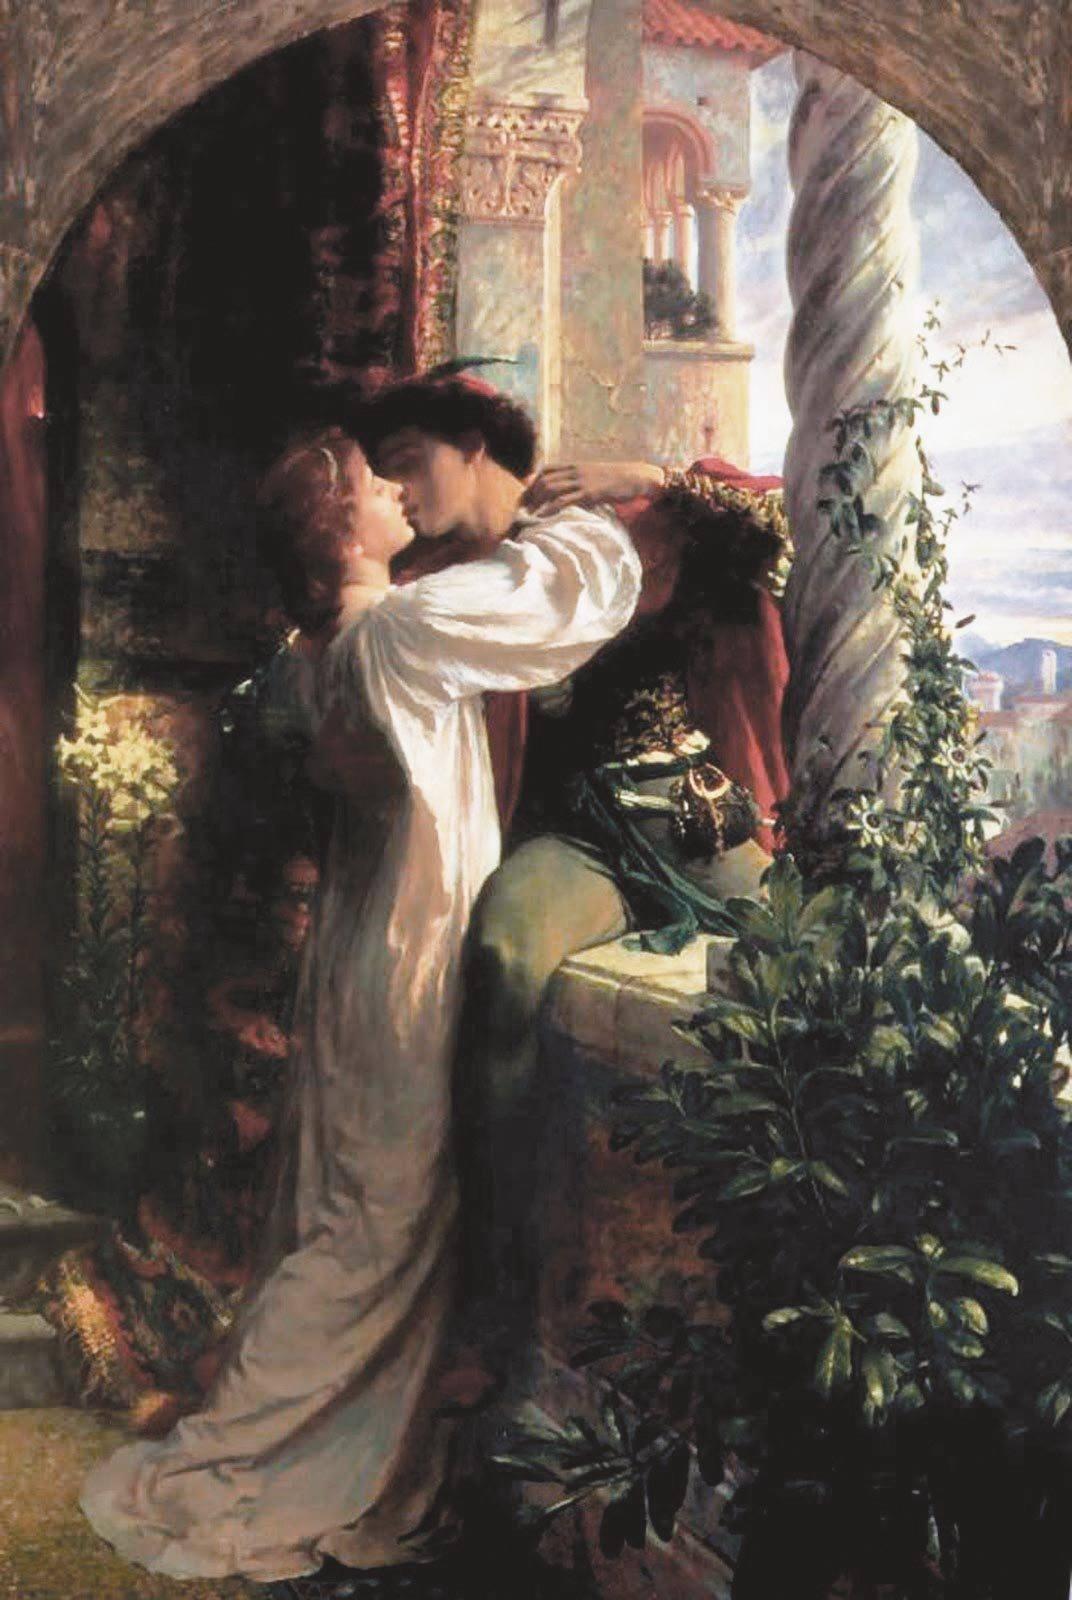 Ex. 7 Roméo et Juliette